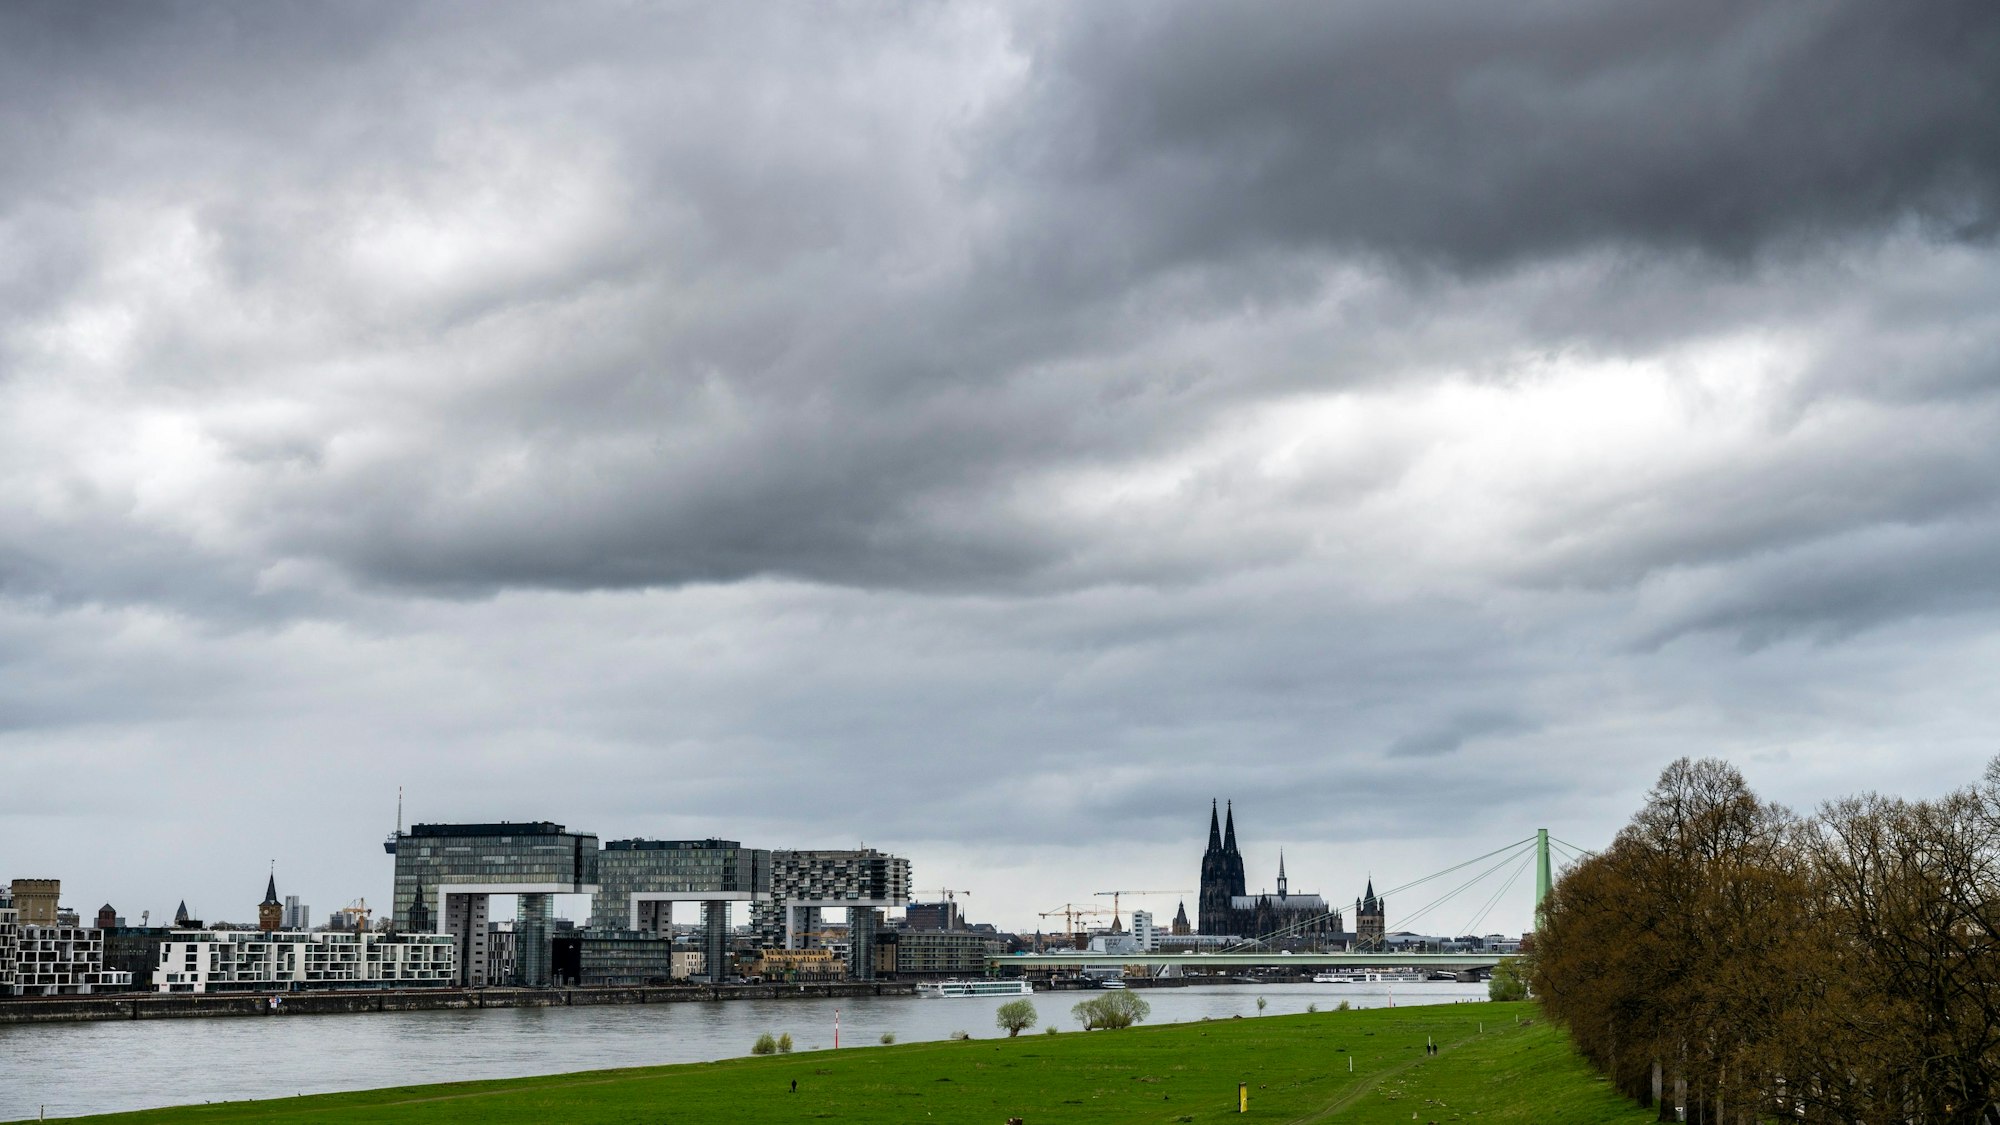 Kranhäuser und Dom vom rechten Rheinufer aus gesehen: Der Himmel über Köln ist mit dunklen Regenwolken verhangen (Bild vom 2. April).